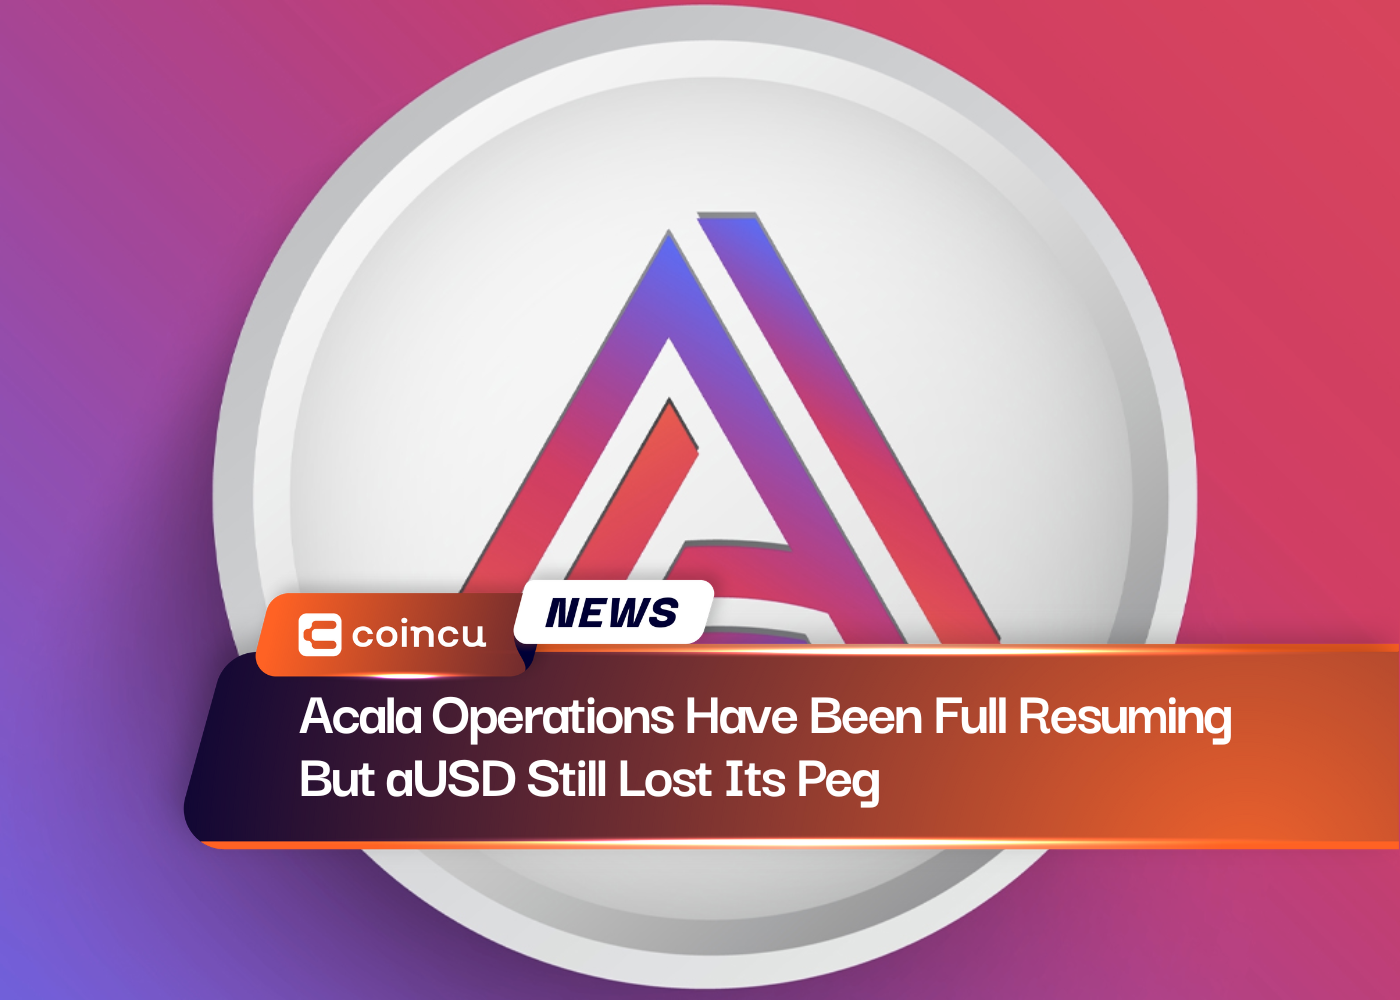 Las operaciones de Acala se han reanudado por completo, pero el USD aún perdió su vinculación